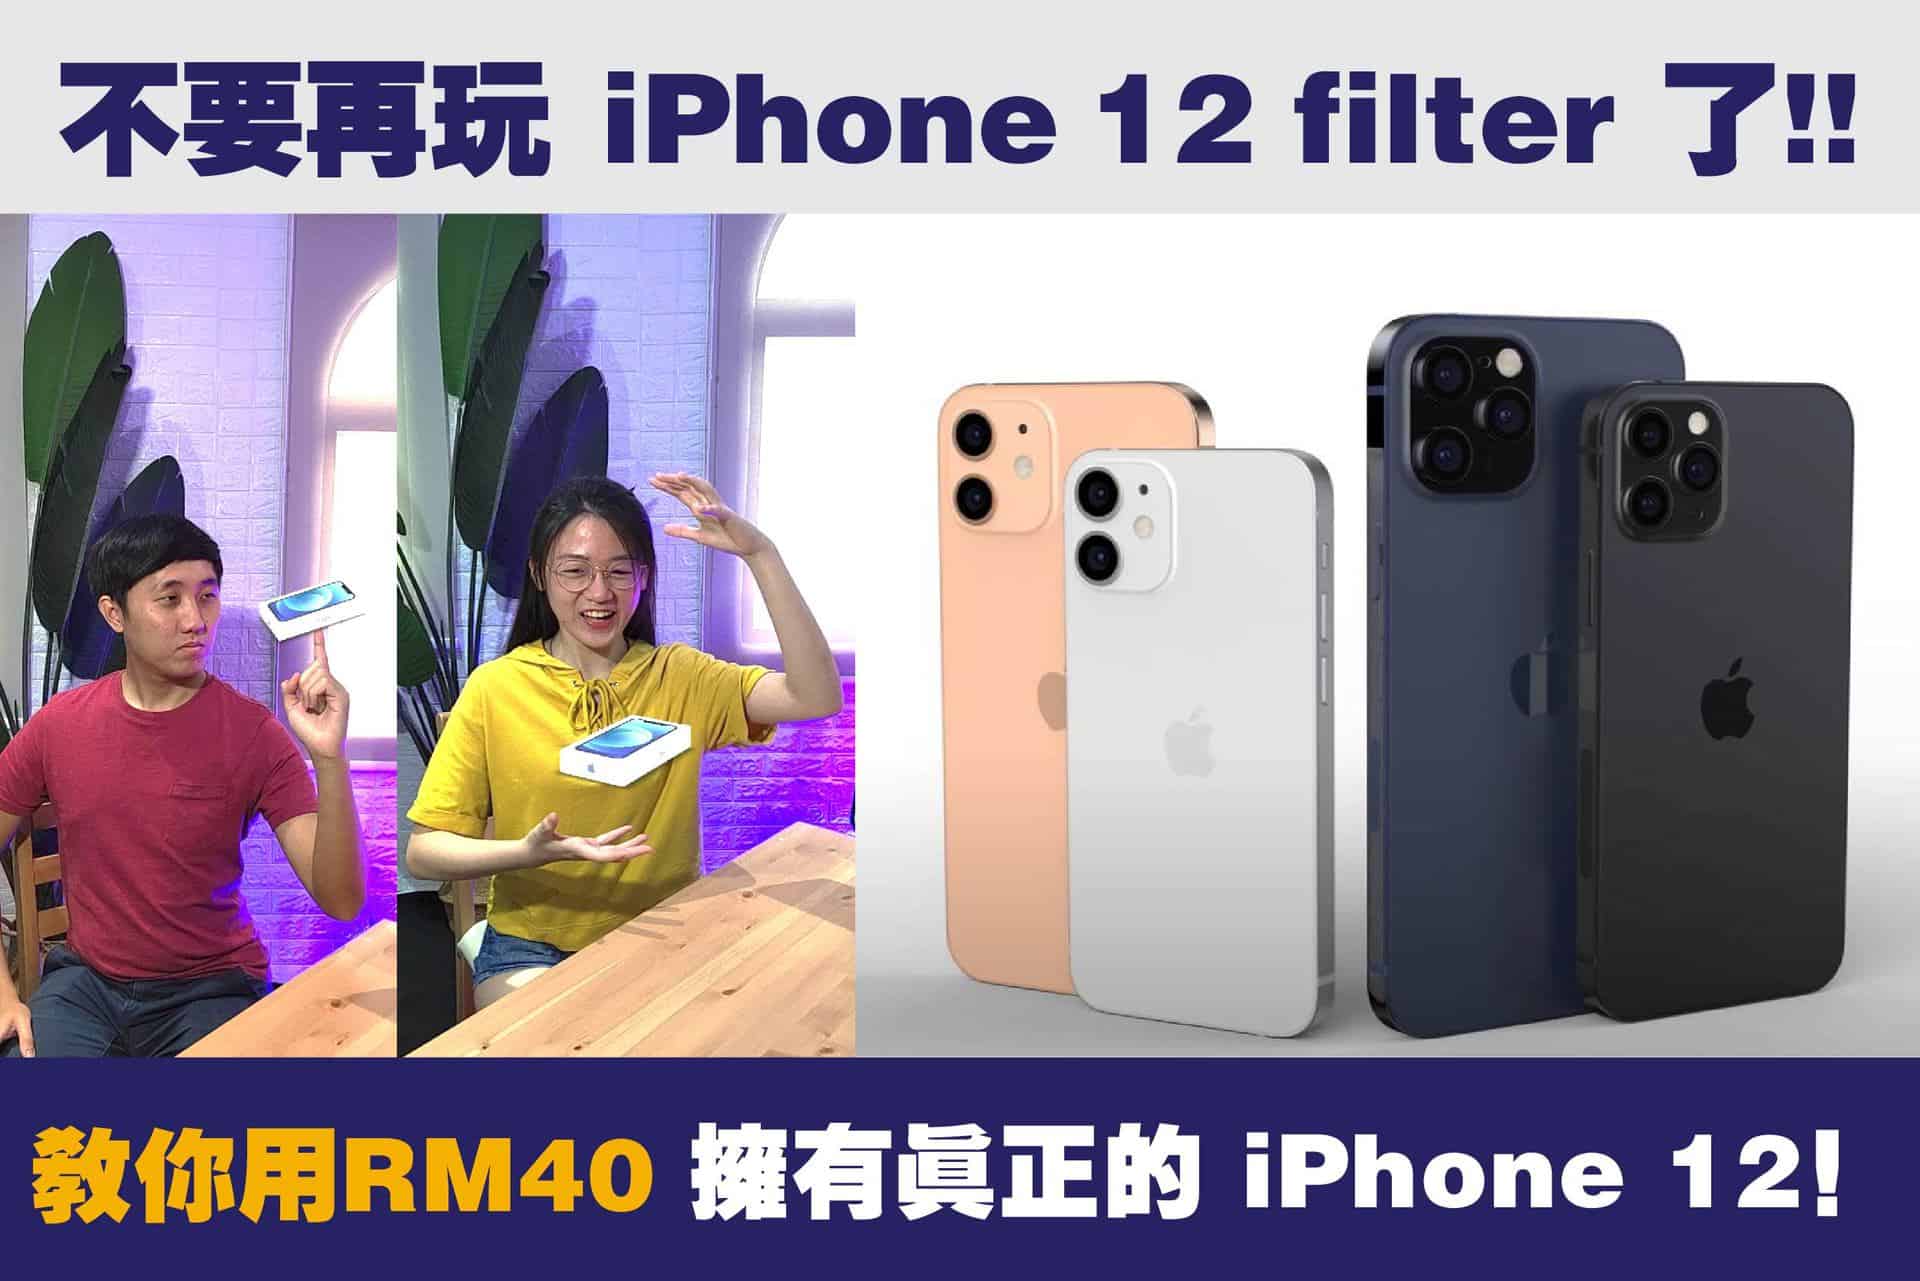 「內附教程」不需要再用iPhone 12 filter 了，教你用 RM 40 擁有真正的 iPhone 12！